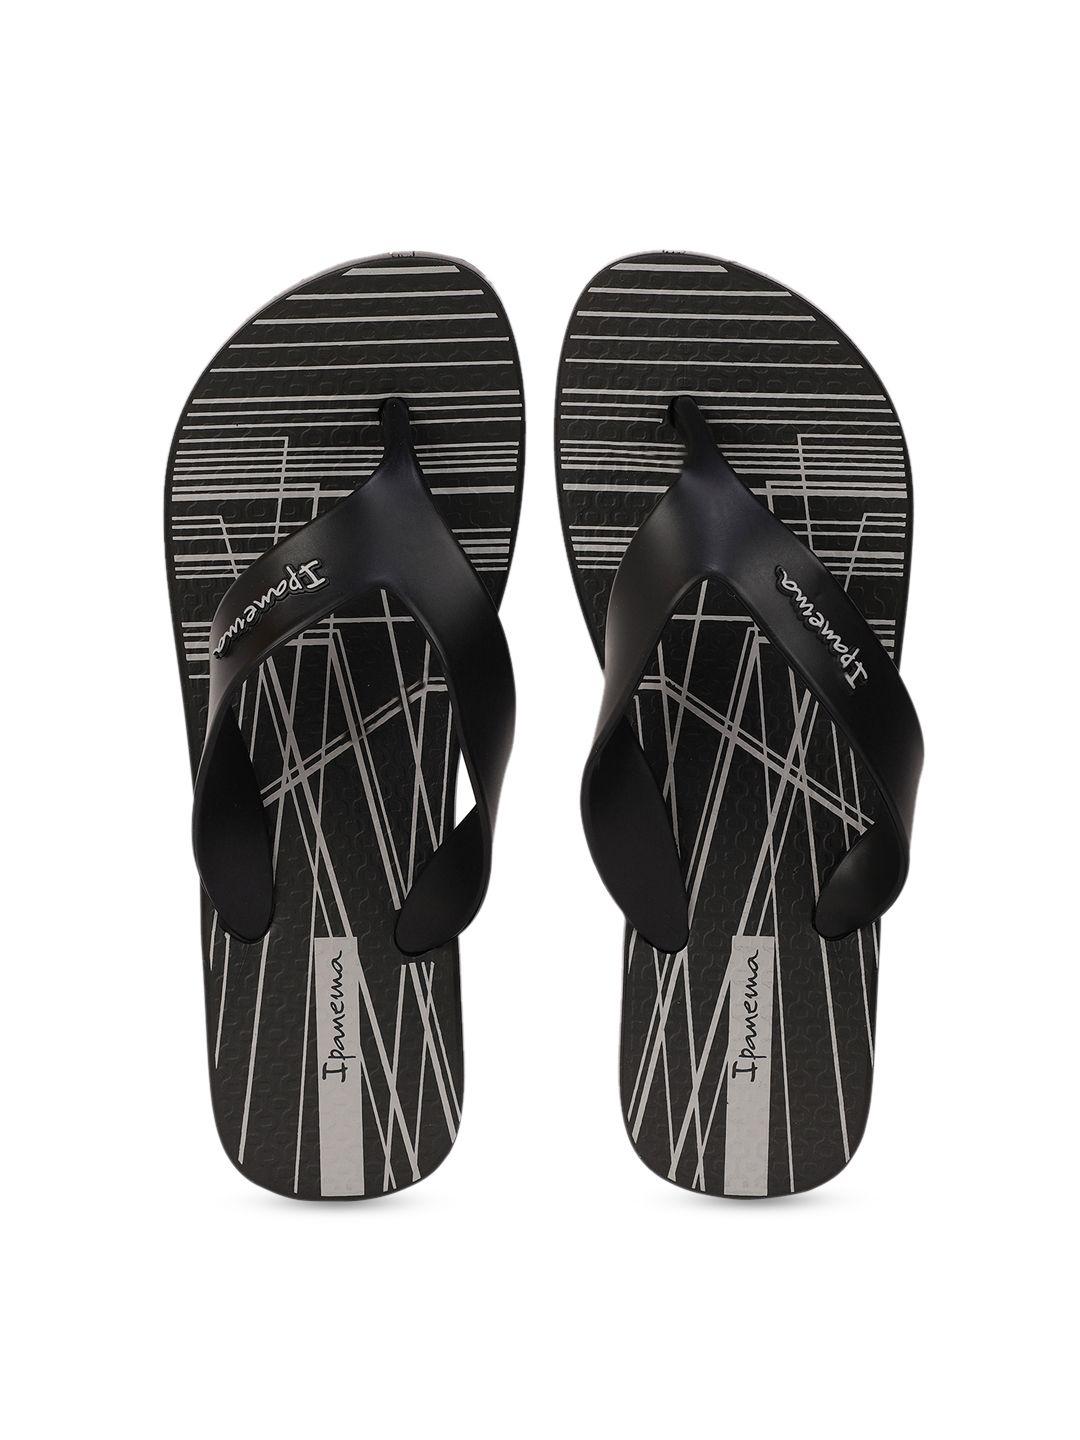 ipanema men black & off-white printed thong flip-flops